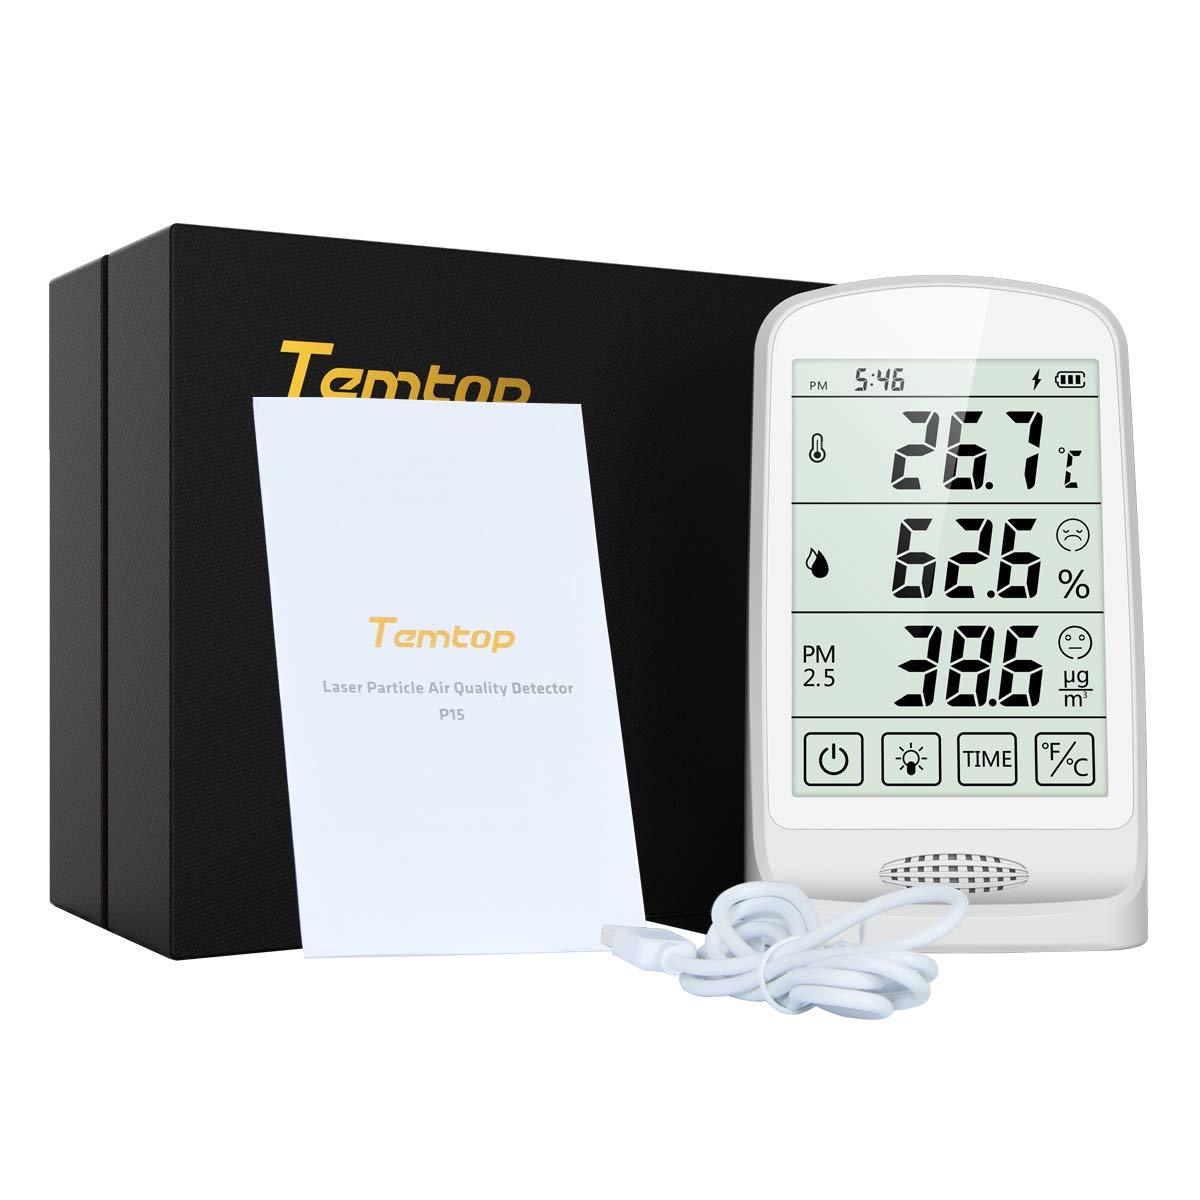 Moniteur de qualité de l'air Temtop P15, détection et affichage en temps réel de la température et de l'humidité PM2.5 AQI